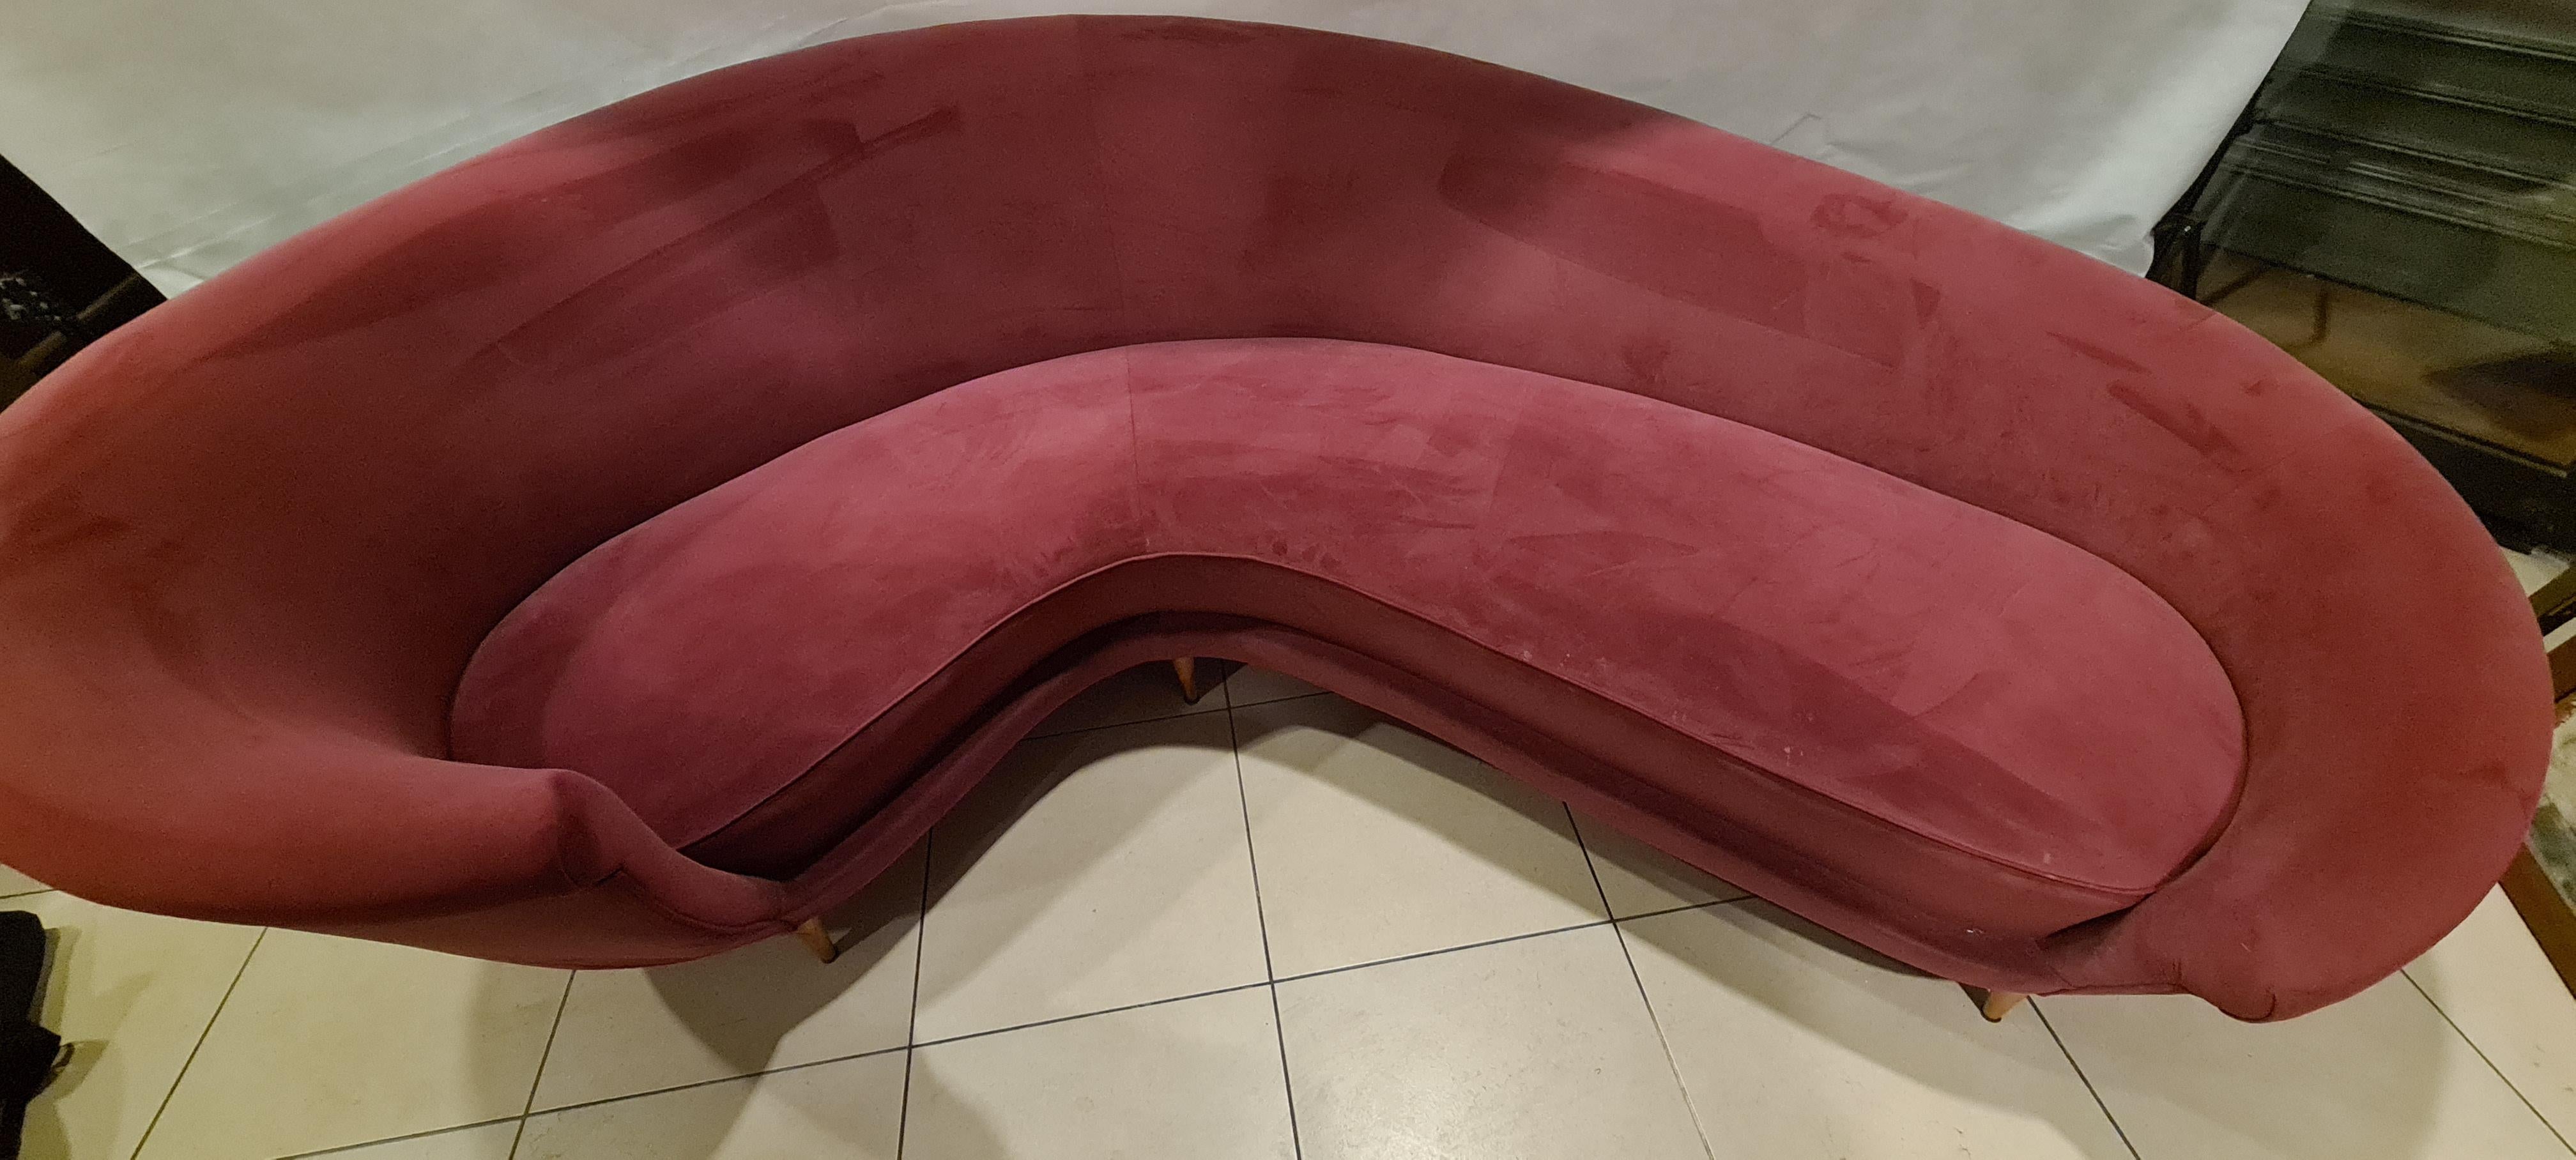 Geschwungenes Sofa, entworfen von Guglielmo Veronesi für Isa Bergamo.

Raffiniert und elegant mit einer weichen und geschwungenen Form, ist dieses Sofa ideal als zentrales Möbelstück, um Ihrem Wohnzimmer Bedeutung zu verleihen.

Hergestellt aus